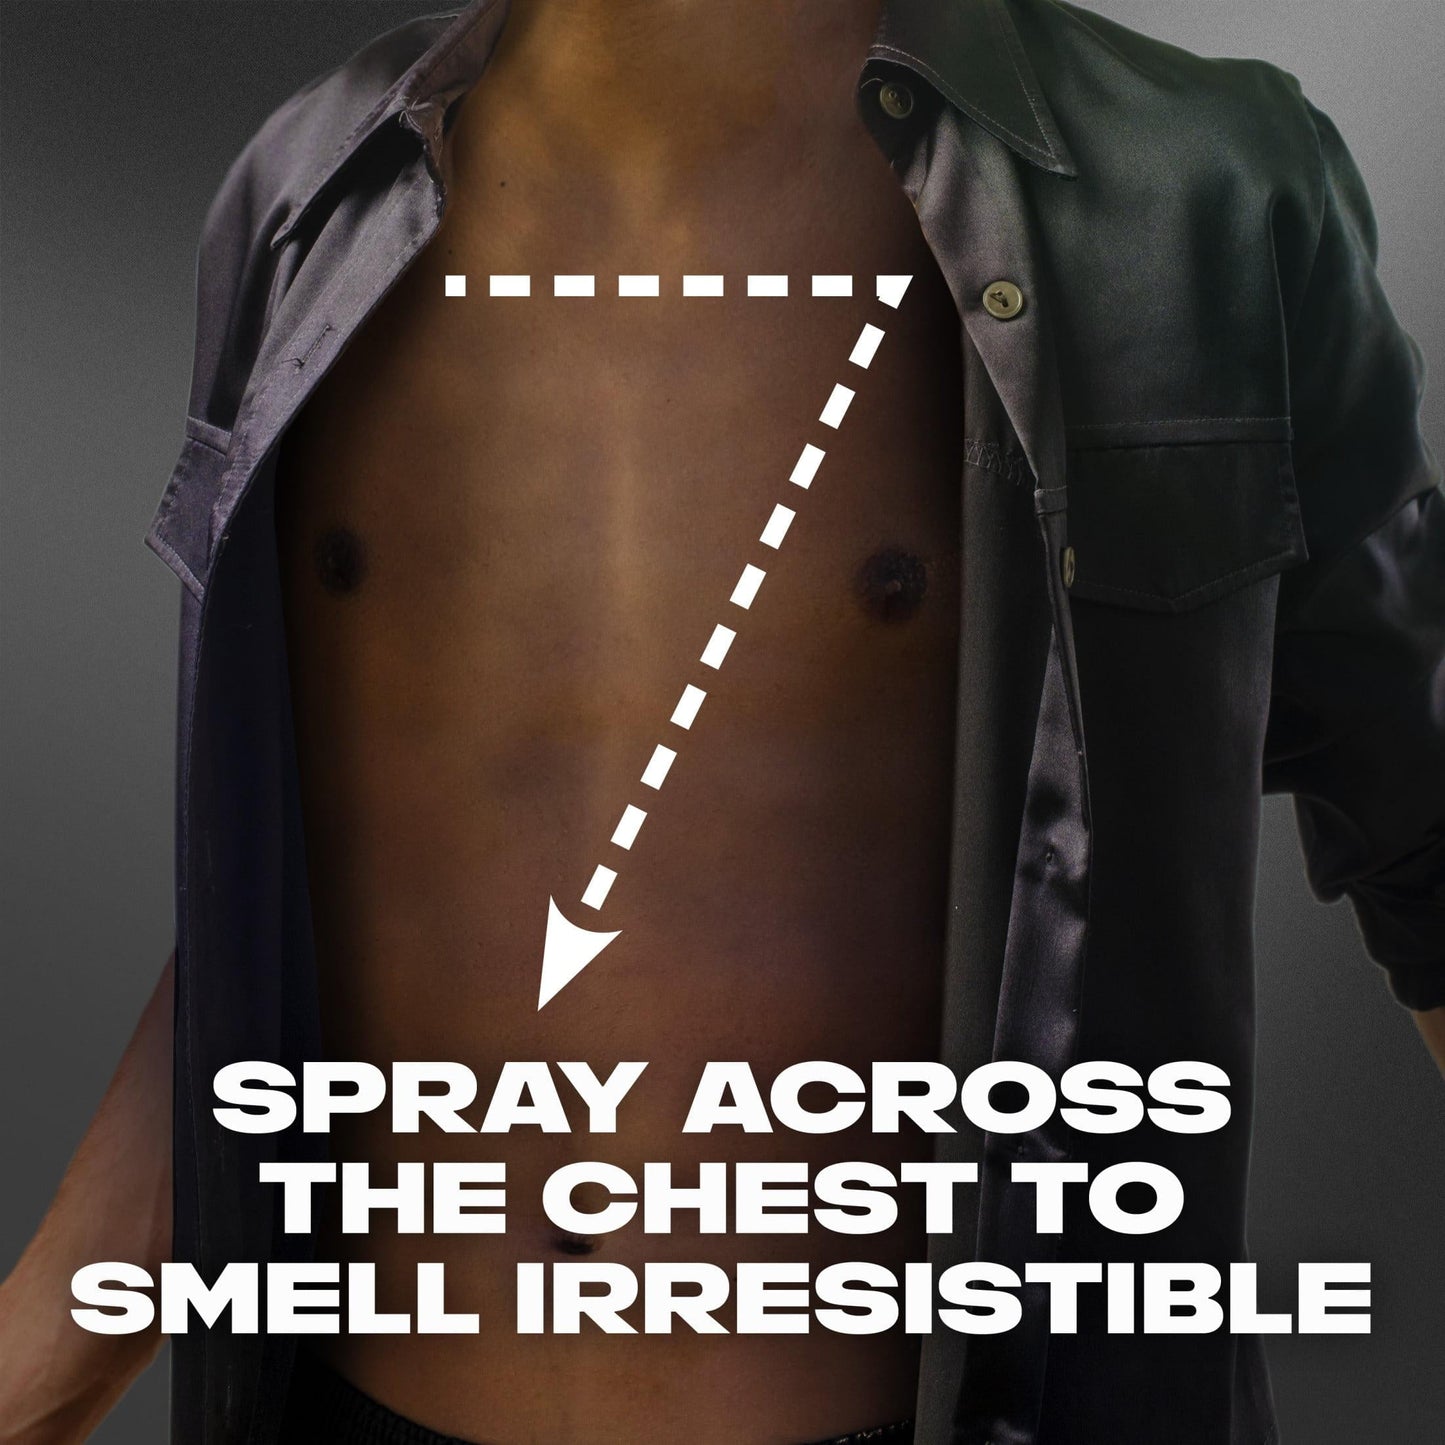 Axe Black Frozen Pear & Sandalwood Body Spray Deodorant for Men, 5.1 oz (2 Pack)